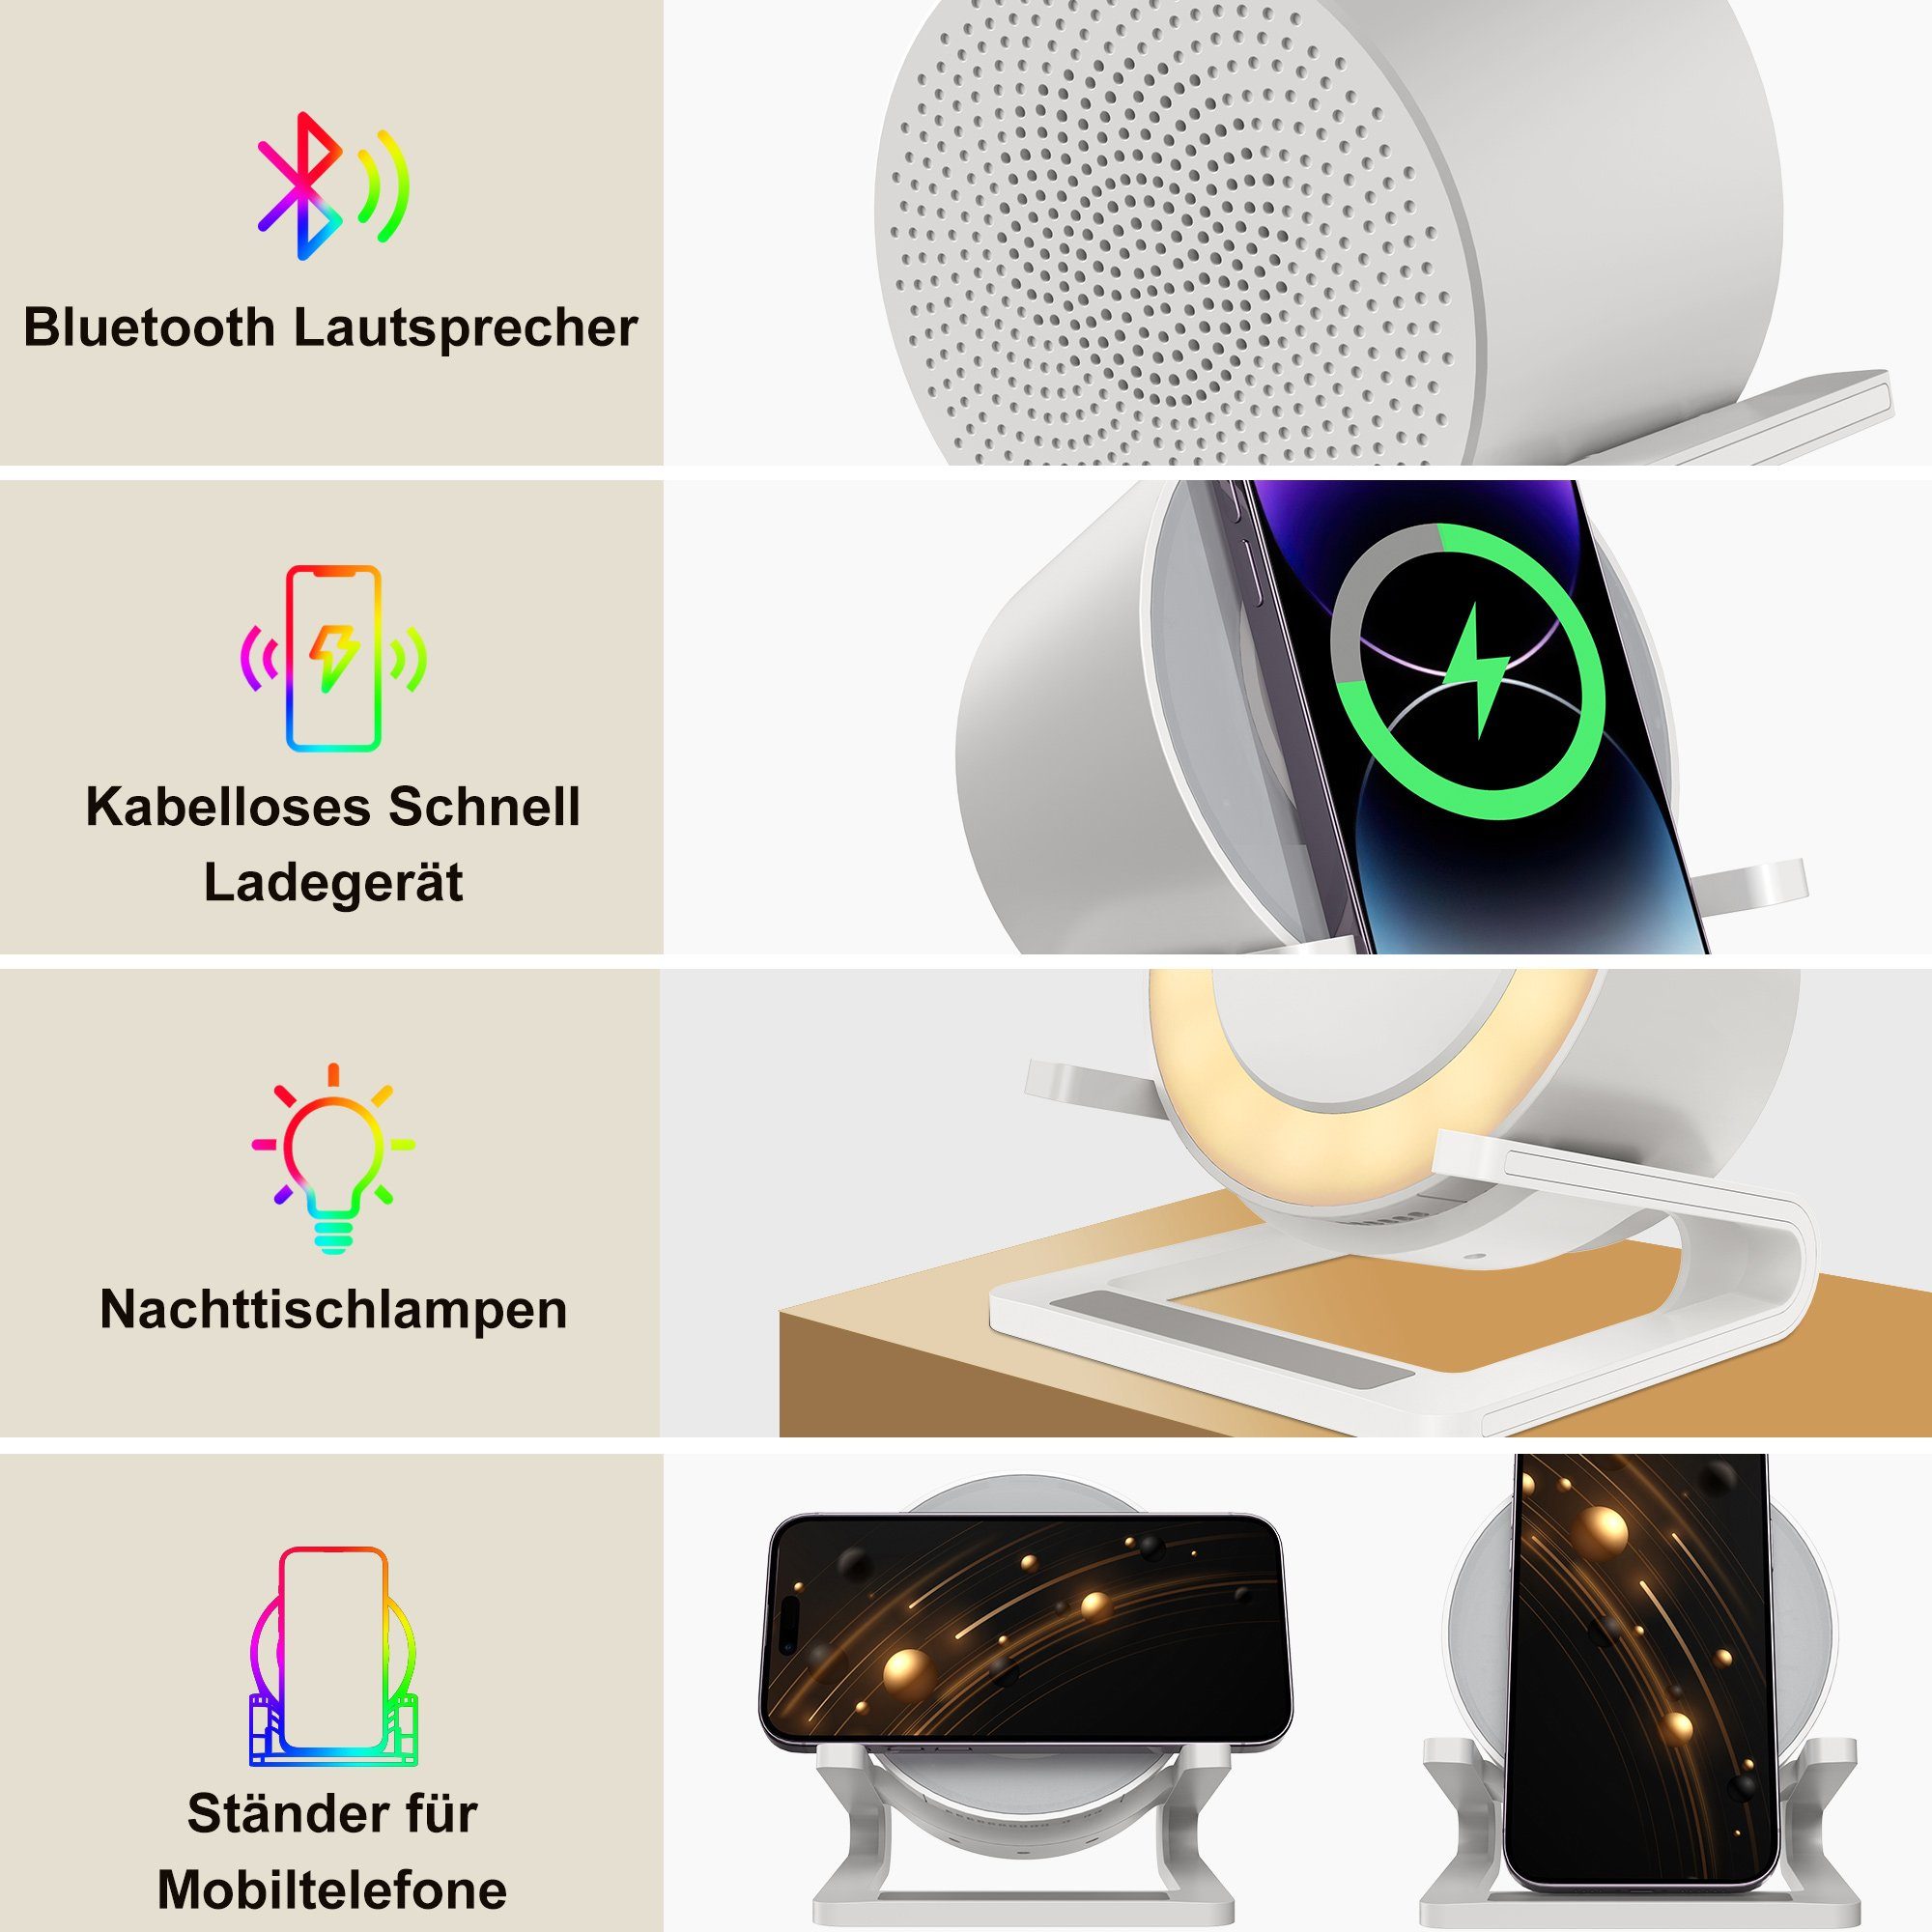 Lautsprecher, Bluetooth Bluetooth-Lautsprecher Ladegeräte Vbrisi Kabellose mit Aufladekopf Wireless